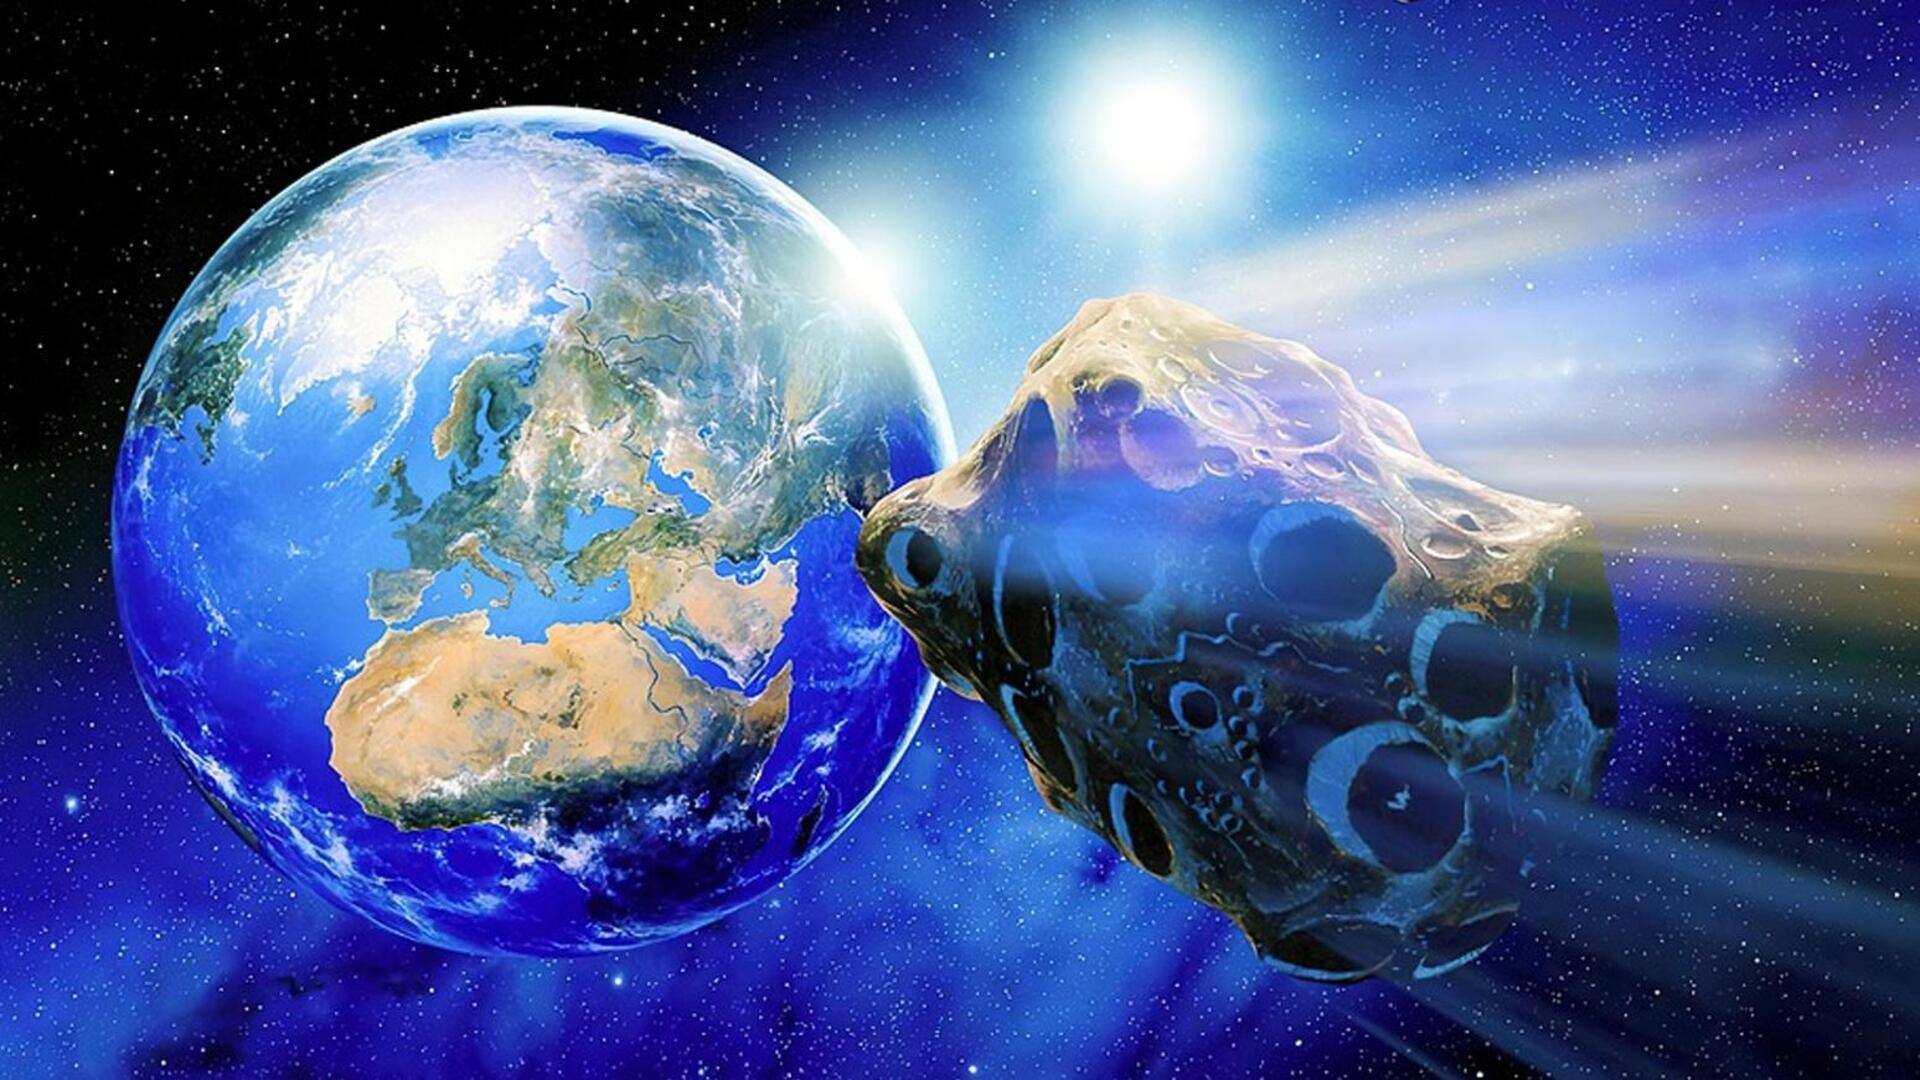 आज पृथ्वी के करीब से गुजरेंगे 2 बड़े एस्ट्रोयड, नासा ने जारी किया अलर्ट